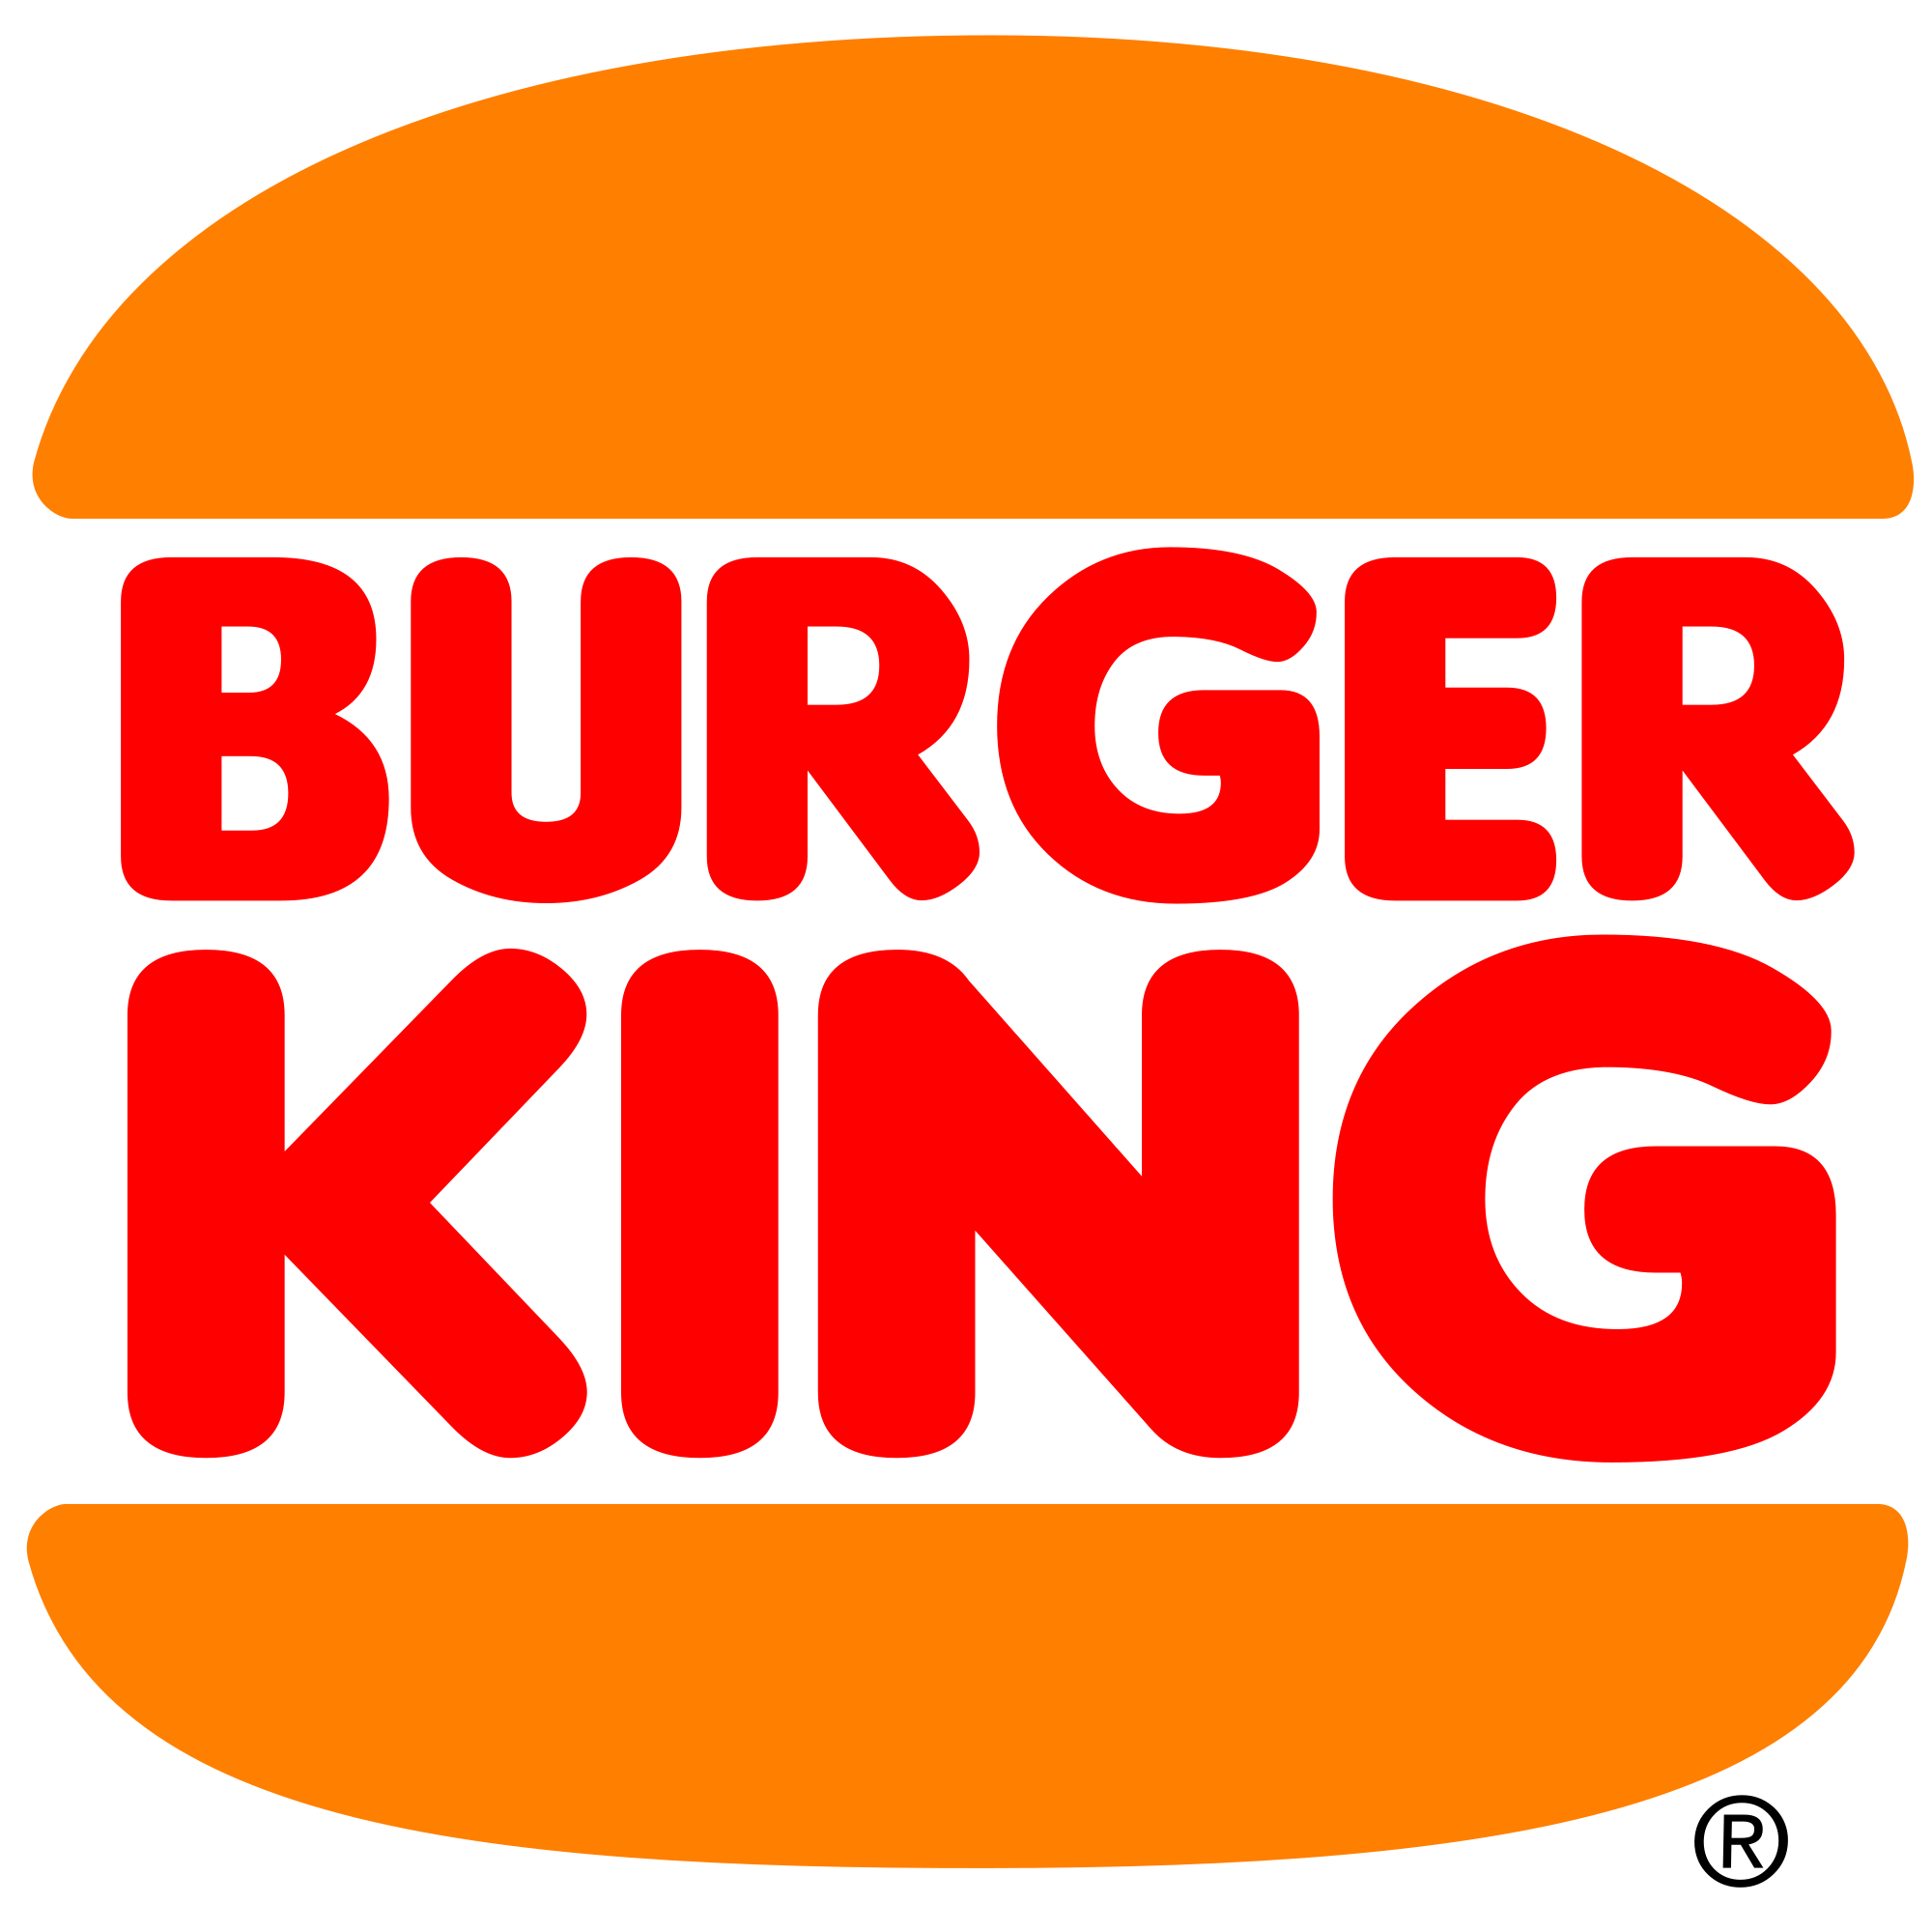 バーガーキングのロゴ